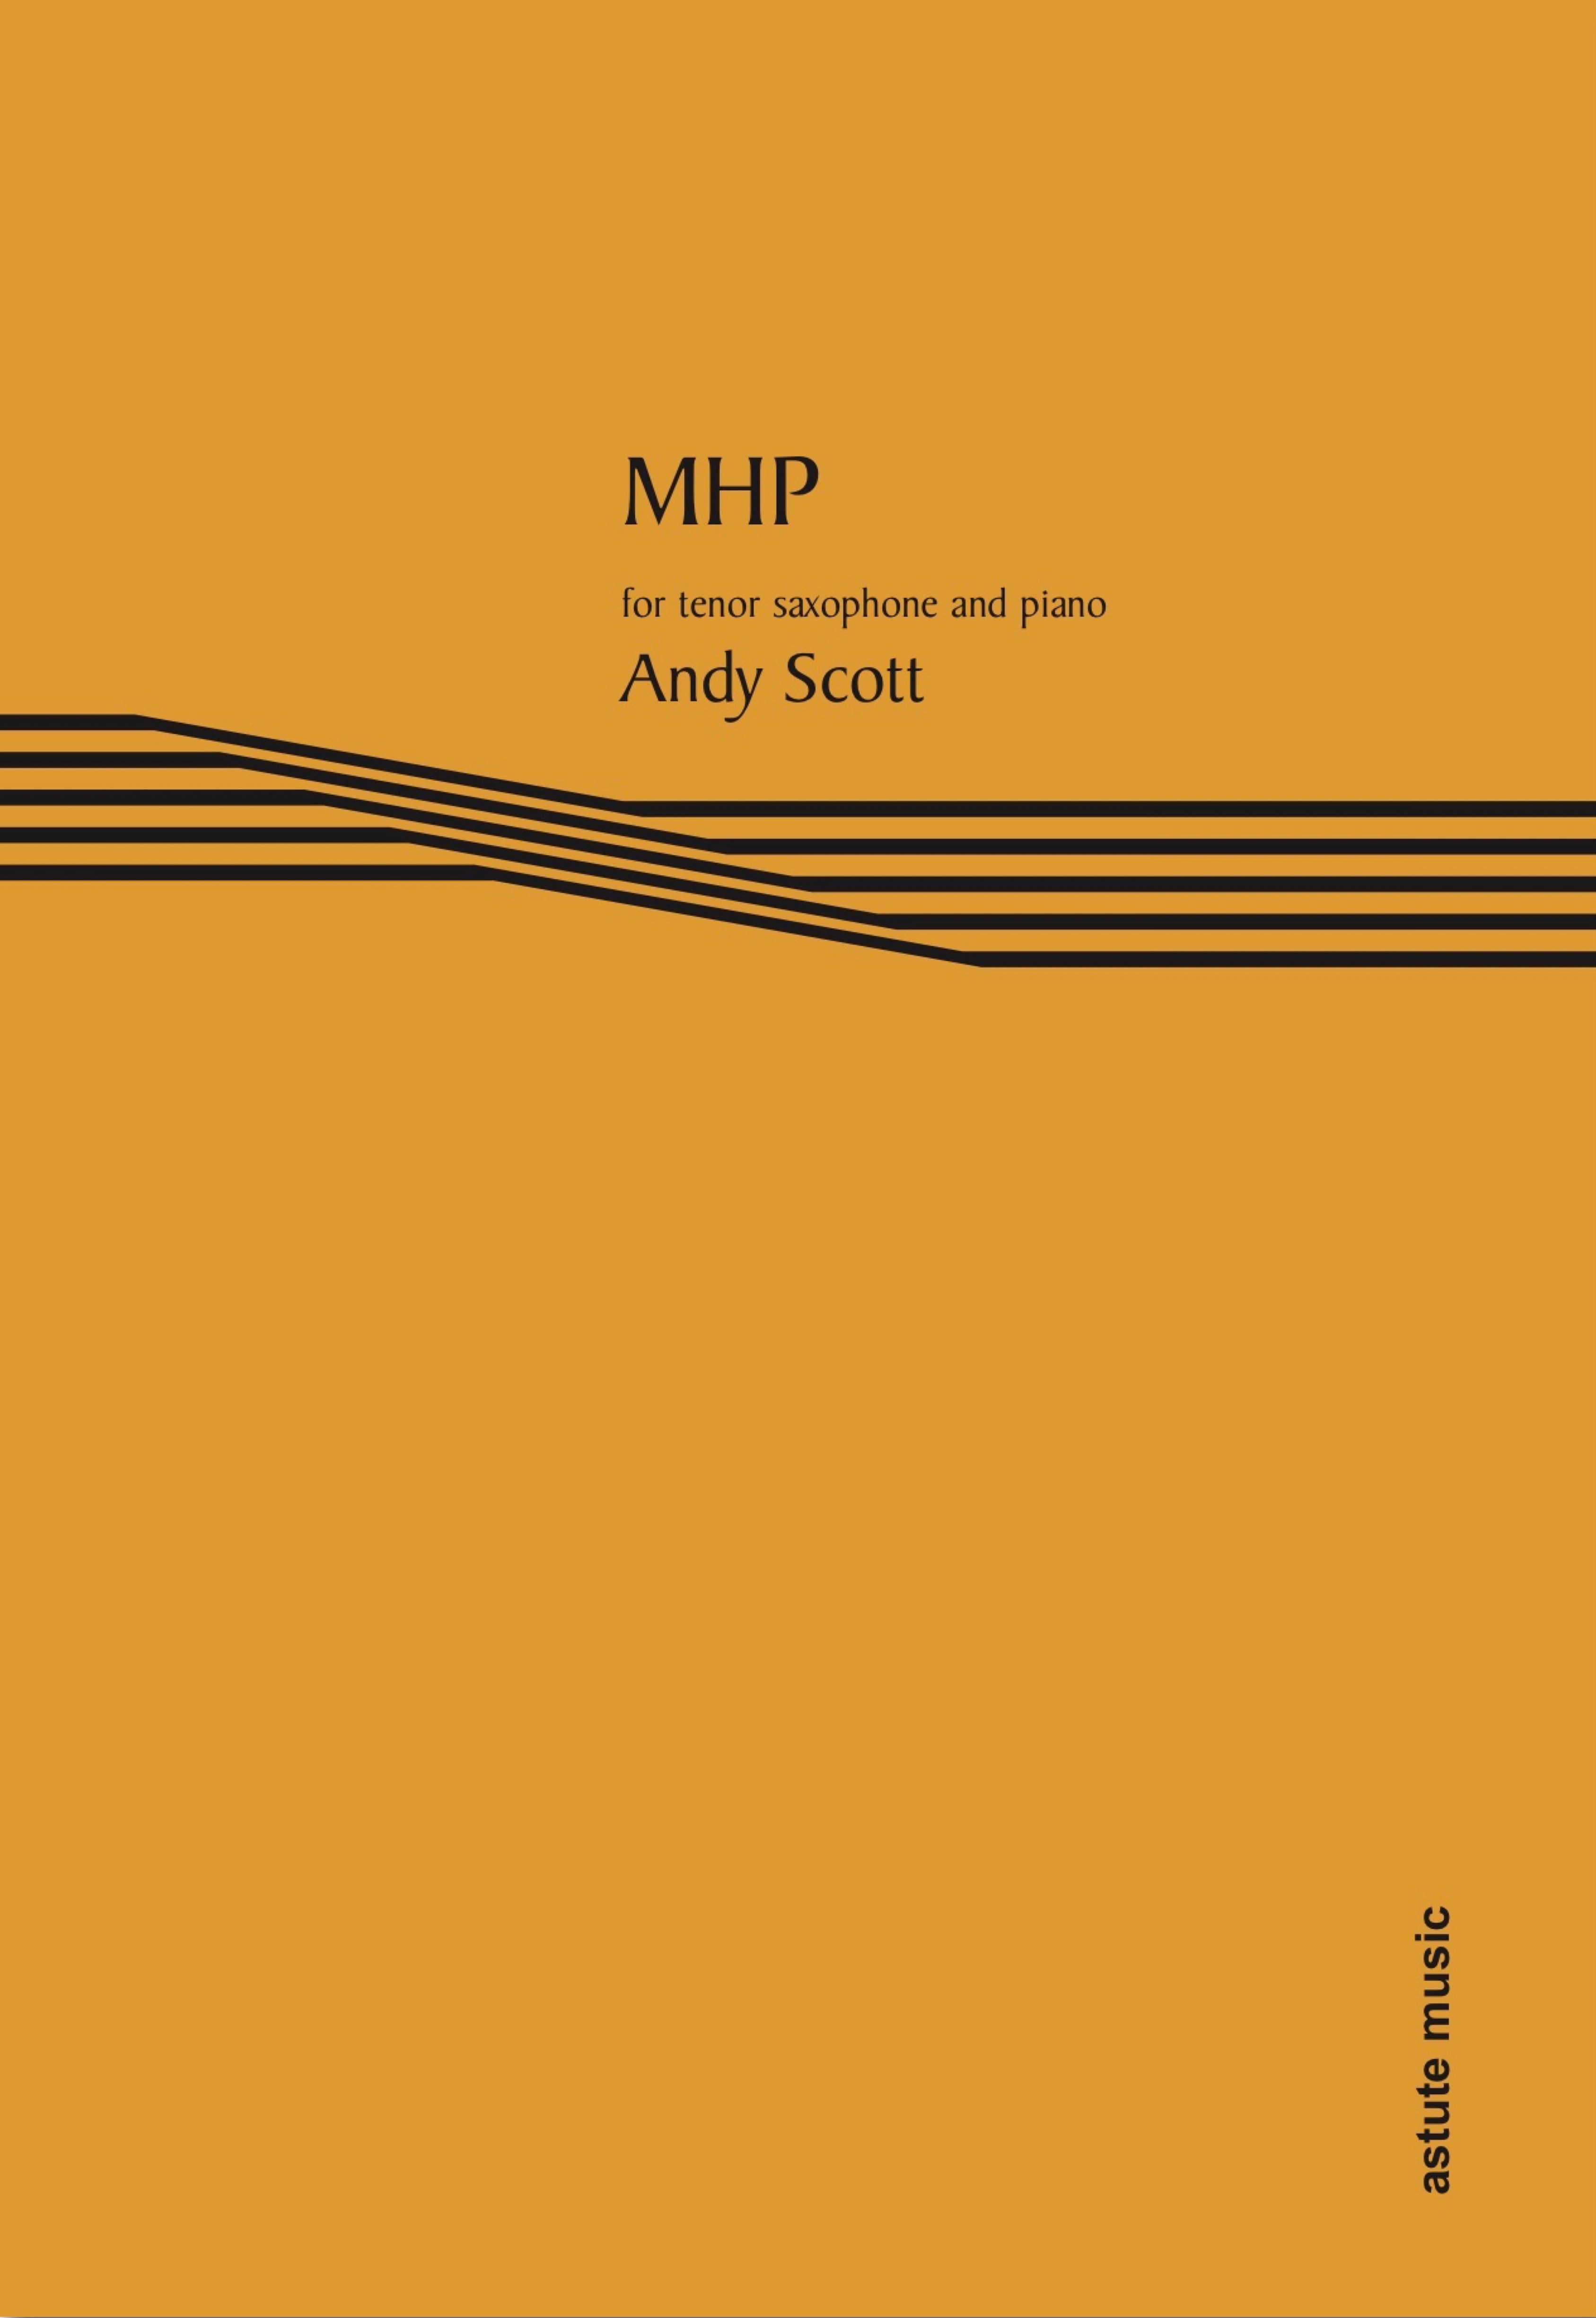 Scott Mhp Tenor Saxophone & Piano Sheet Music Songbook